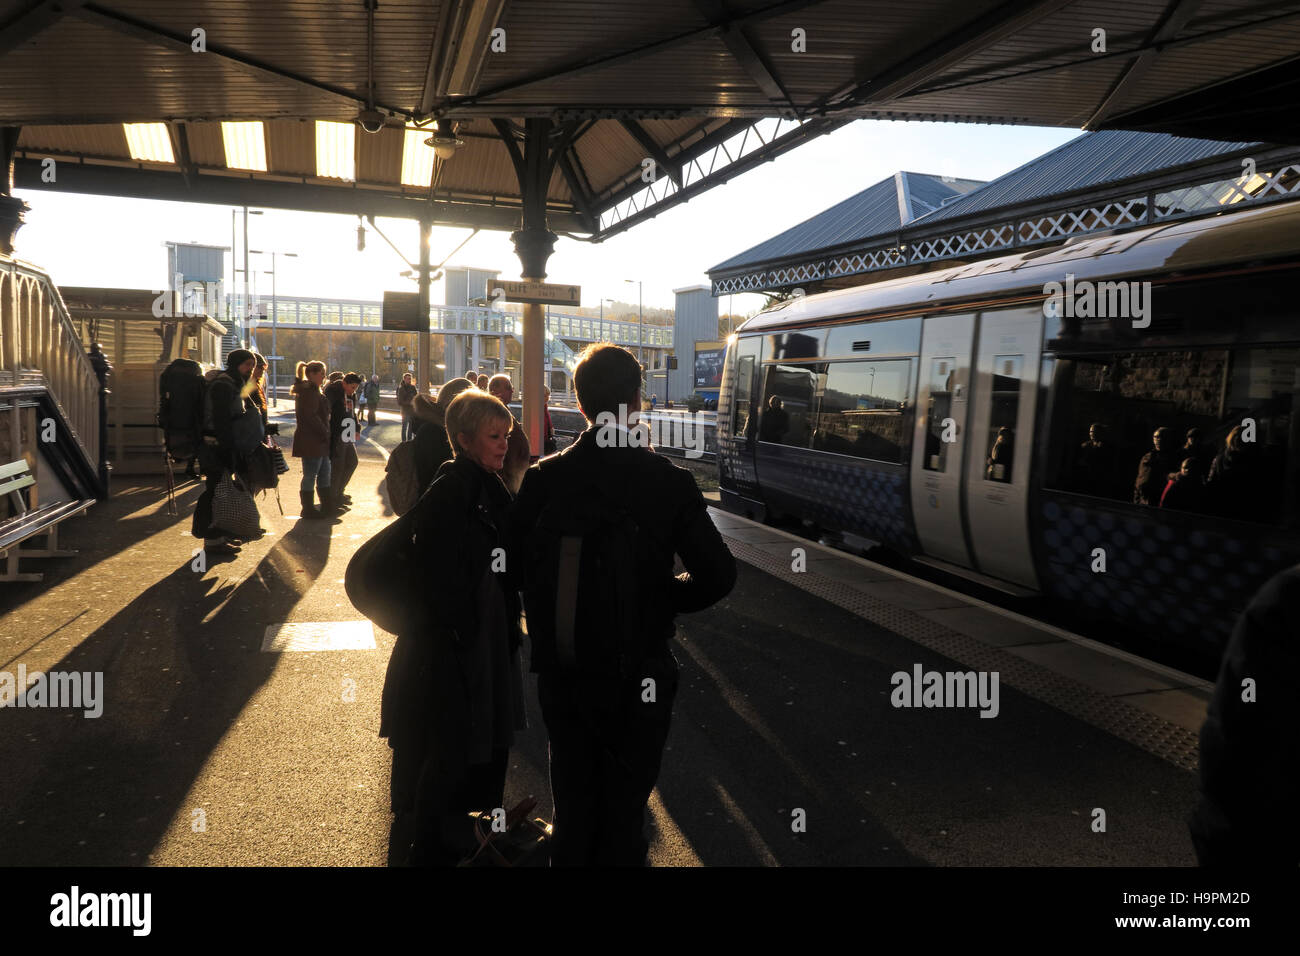 Les passagers casting shadows sur une plate-forme ferroviaire, Perth, Ecosse, Royaume-Uni Banque D'Images